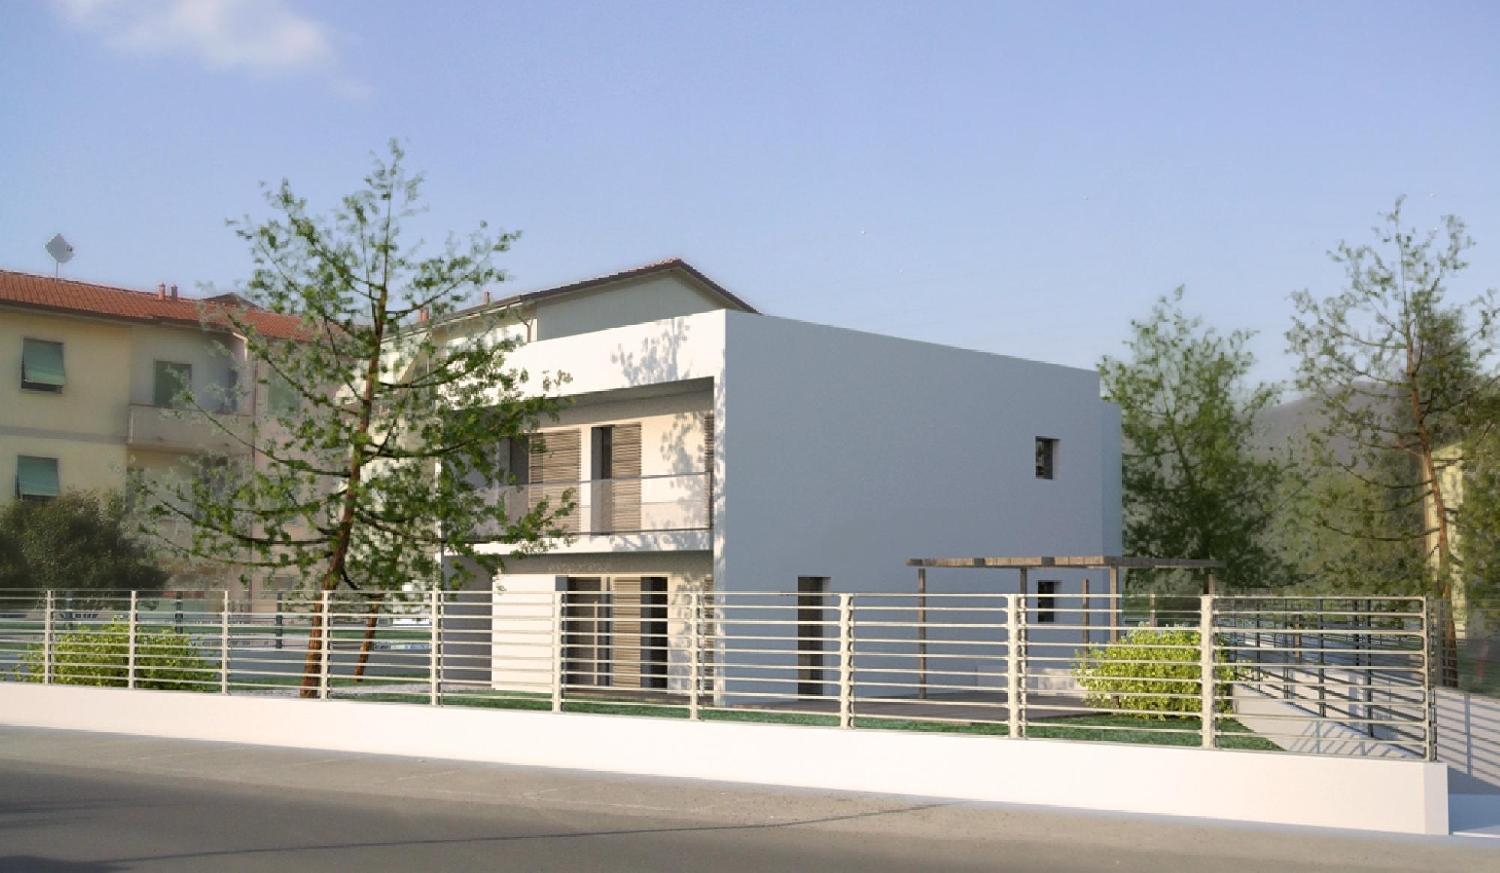 Studio di progettazione - Studio tecnico associato Tondin - Progettazione - residenze - residenza bifamiliare via giuliani